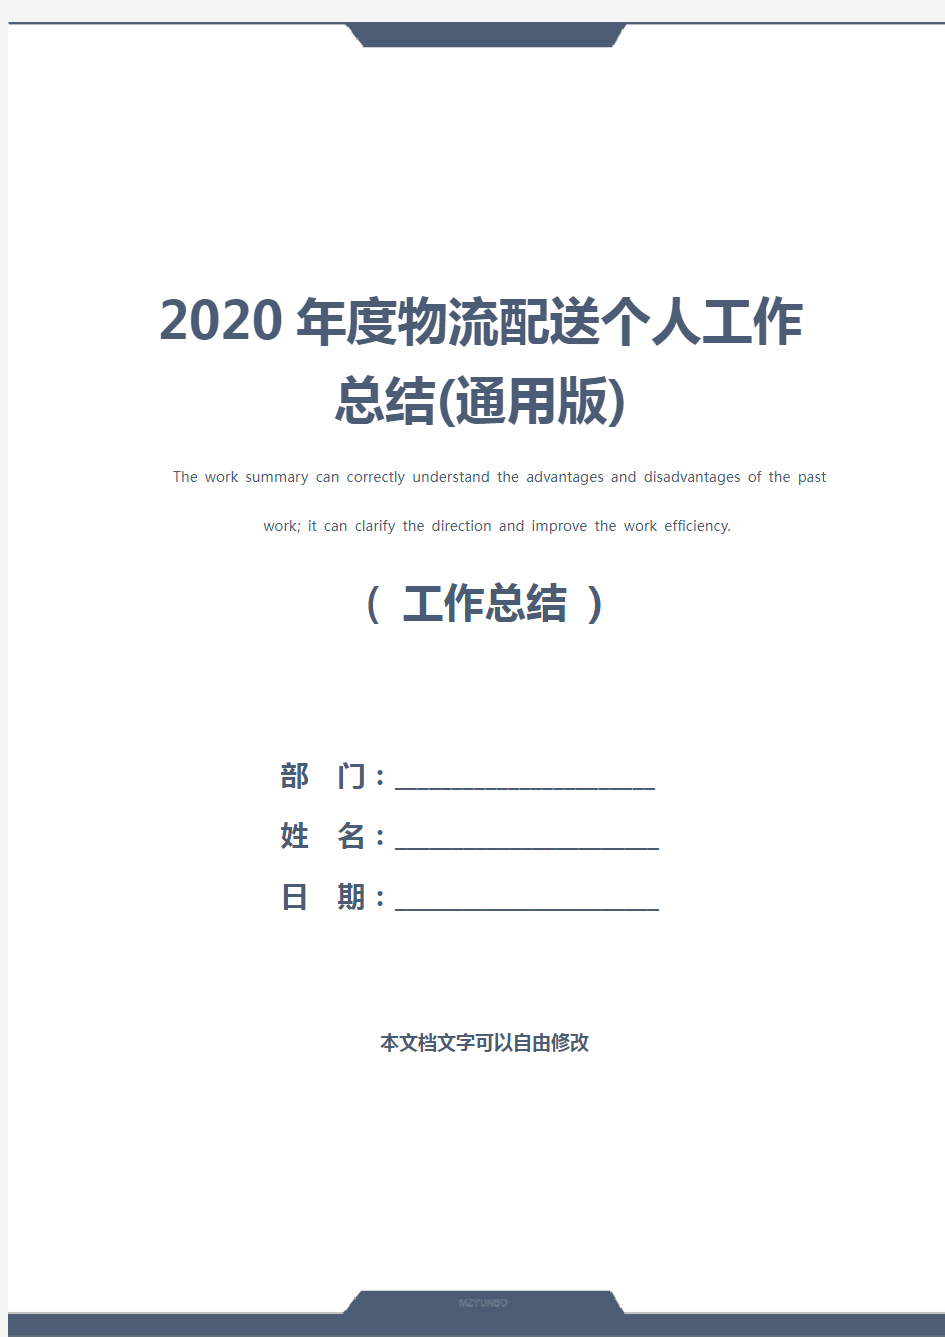 2020年度物流配送个人工作总结(通用版)